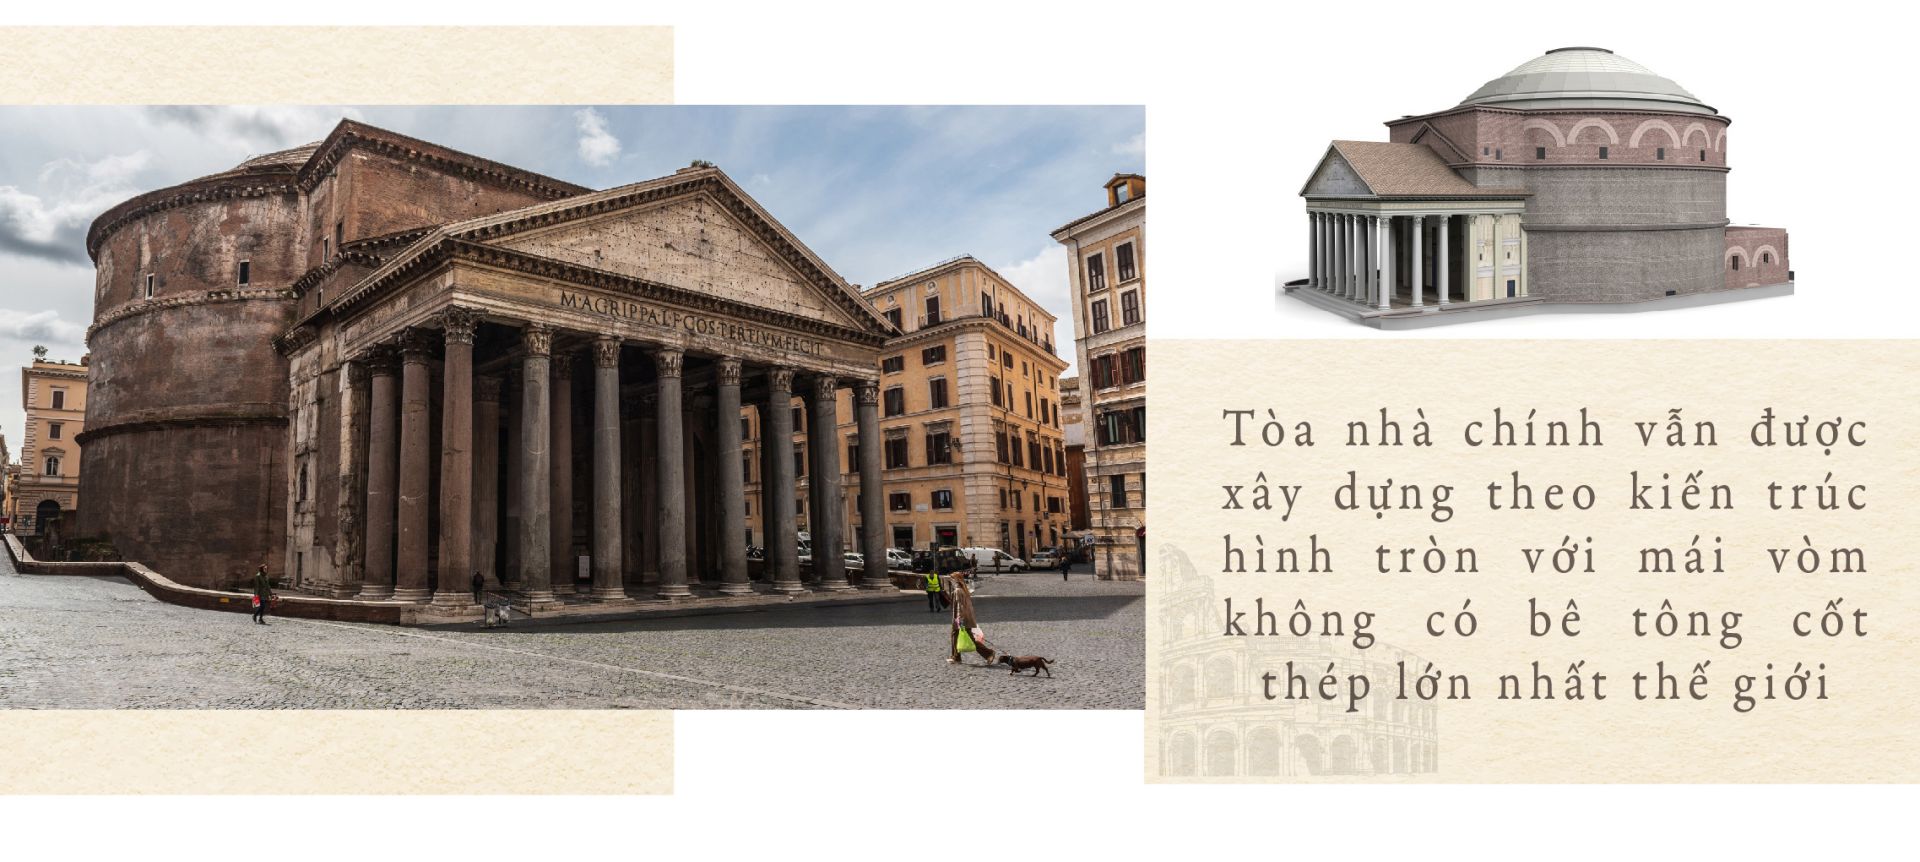 Đền Pantheon nổi tiếng mái cổng hình tam giác được làm từ những cột đá hoa cương ấn tượng. Tòa nhà chính vẫn được xây dựng theo kiến trúc hình tròn với mái vòm không có bê tông cốt thép lớn nhất thế giới. Điểm đặc biệt của ngôi đền là mái vòm với một lỗ hổng ở giữa để ánh sáng tự nhiên chiếu vào đã làm điểm thu hút và tò mò cho du khách. Ngôi đền có sự kết hợp hoàn mỹ giữa kiến trúc La Mã và kiến trúc của Thiên Chúa Giáo, là một tuyệt tác của nhân loại. Địa điểm du lịch nổi tiếng này của Rome luôn thu hút hàng triệu lượt khách du lịch mỗi năm.